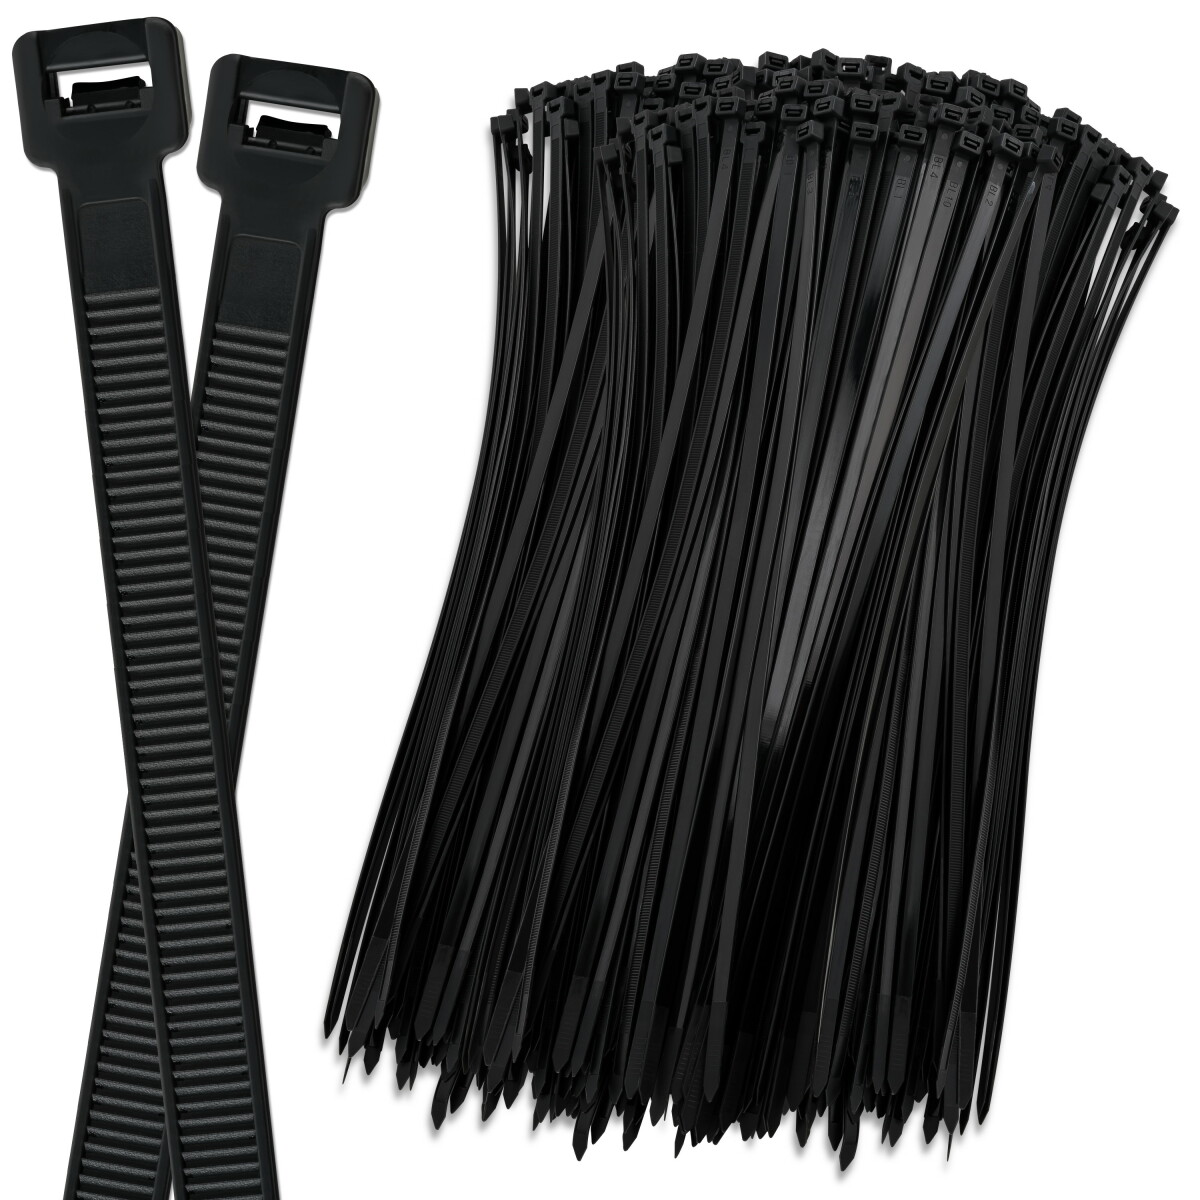 Kabelbinder schwarz 12,4x 730mm 100 Stück Kabelstraps - Industrie